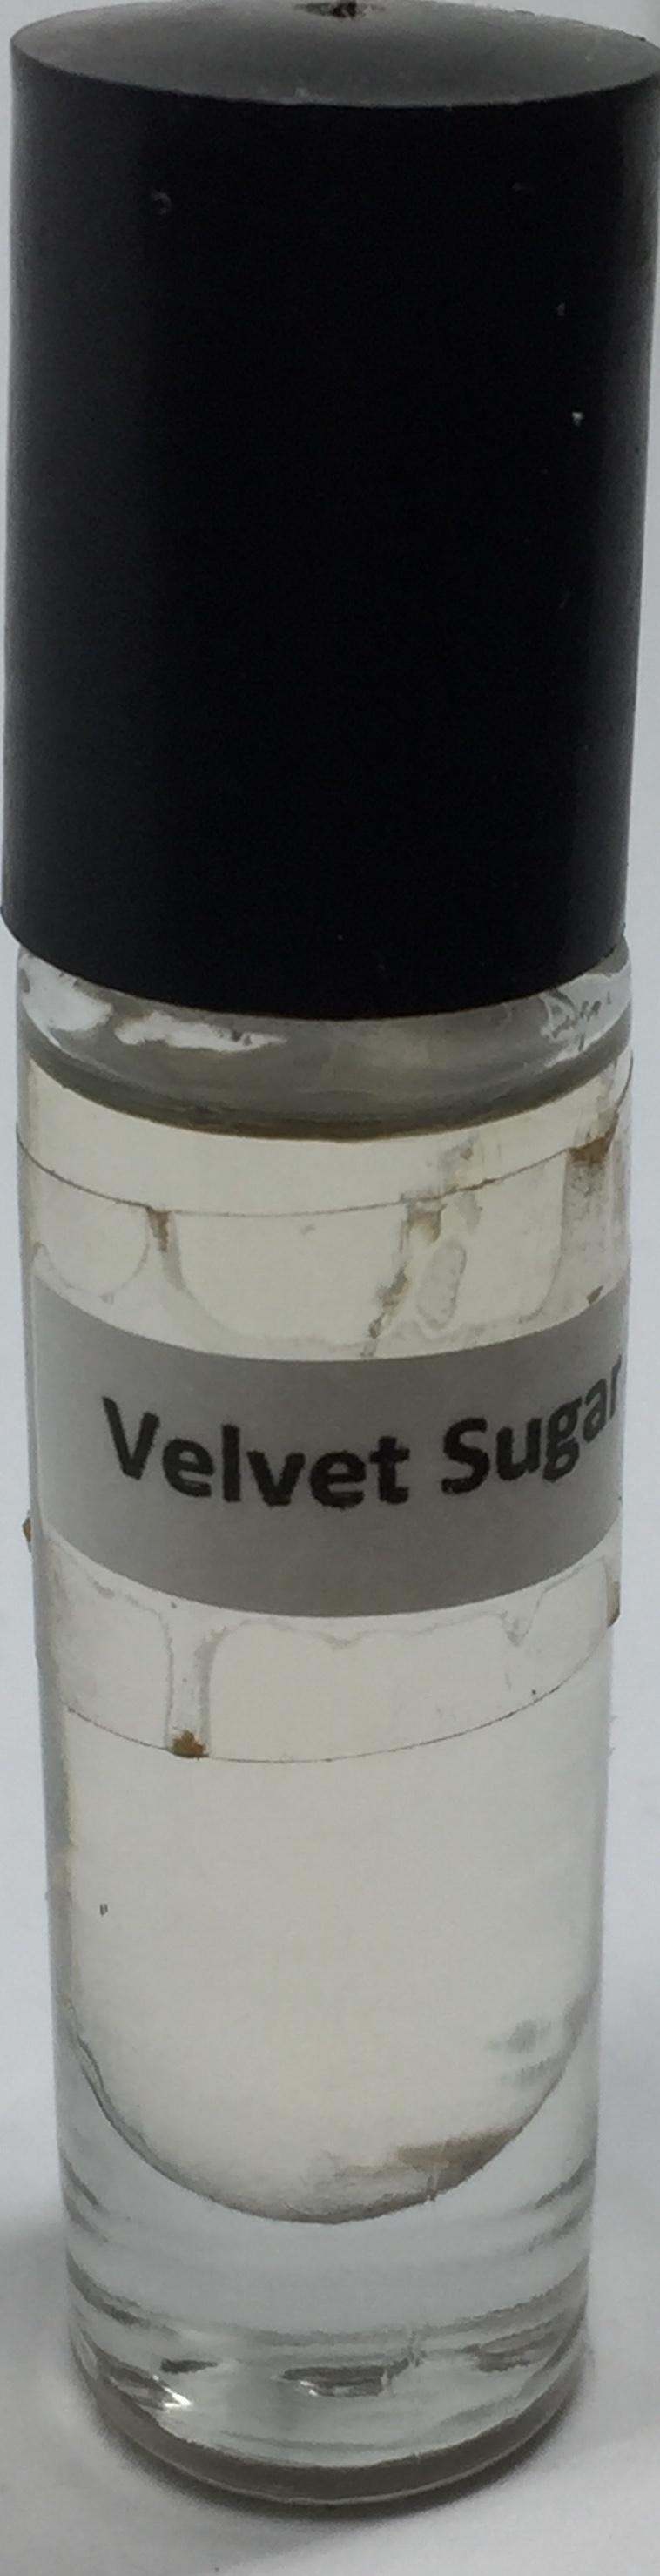 Velvet Sugar: Fragrance(Perfume)Body Oil Women